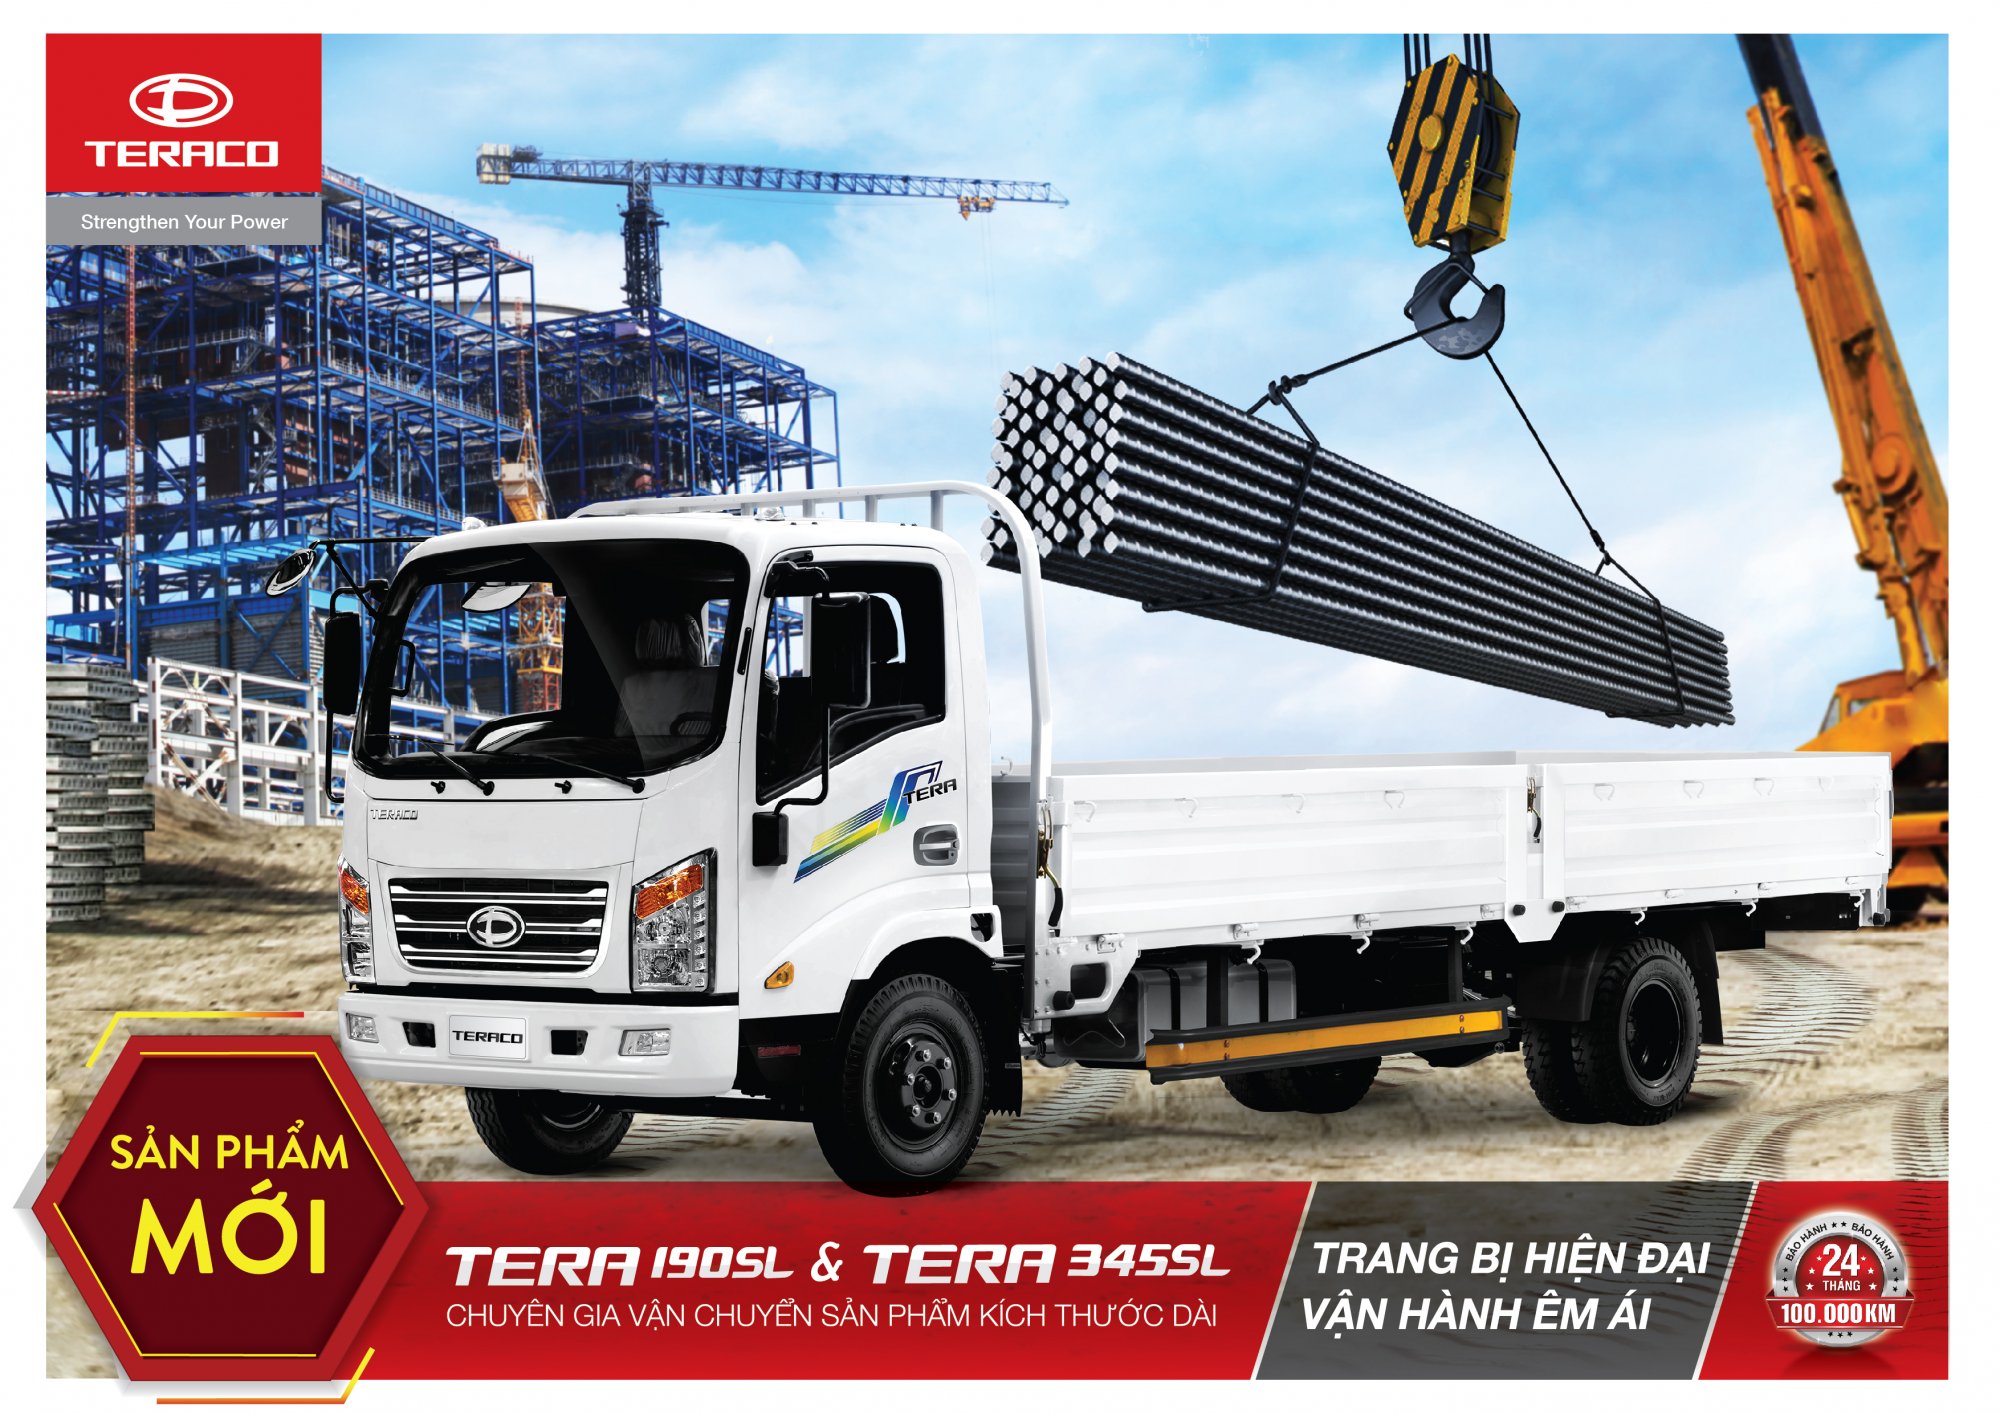 Tera190SL và Tera345SL - Chuyên gia vận chuyển các hàng hoá kích thước dài